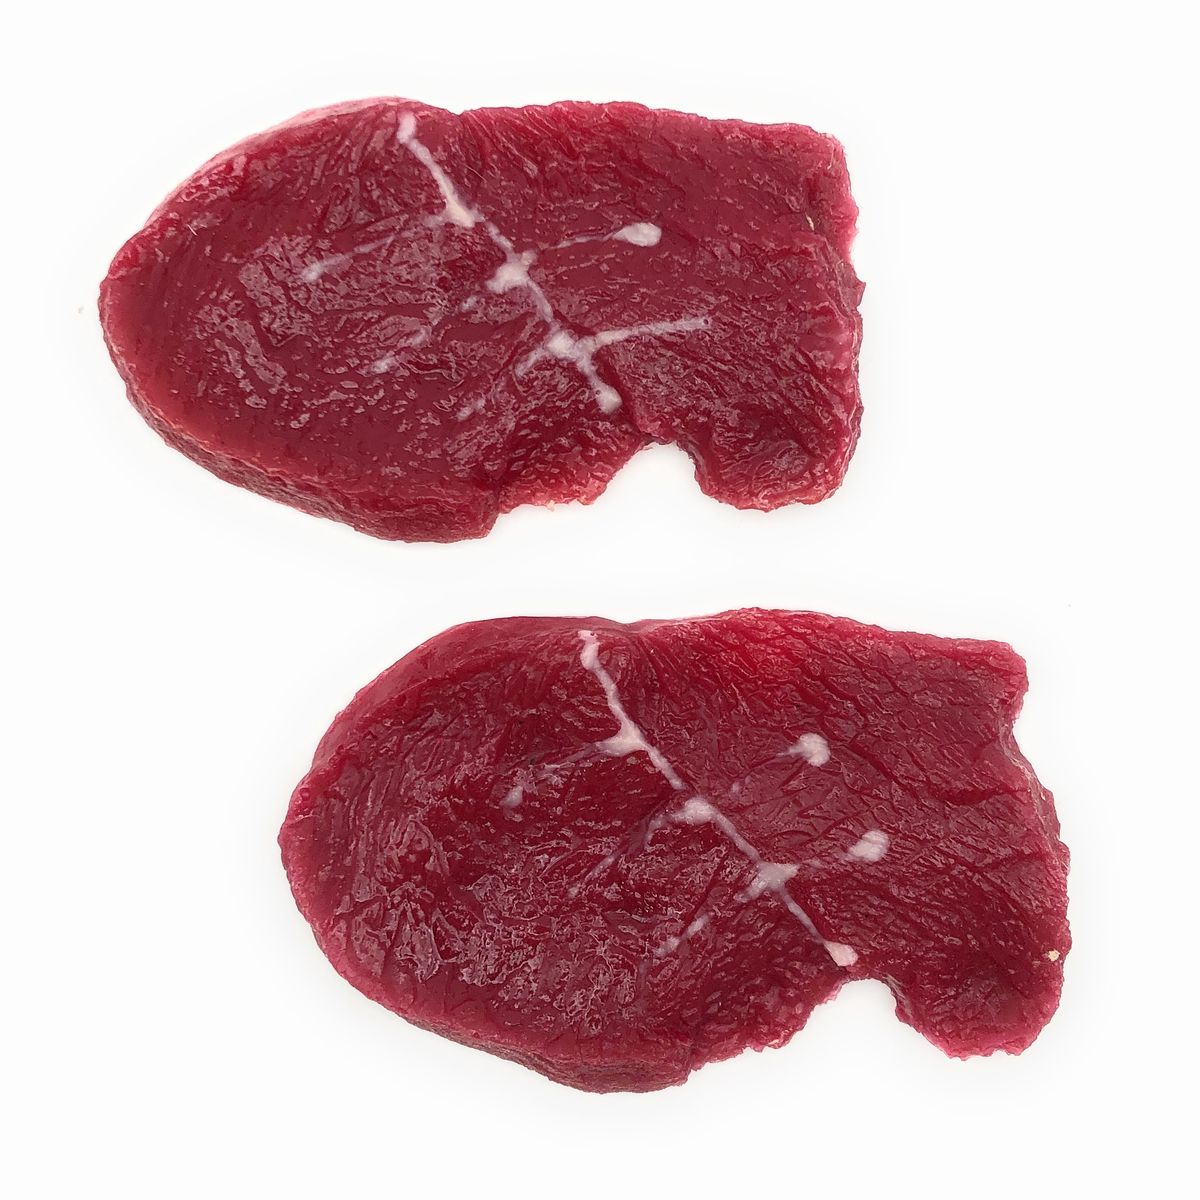 食品サンプル 鹿肉 生肉 赤身 ジビエ 切り身 2個セット